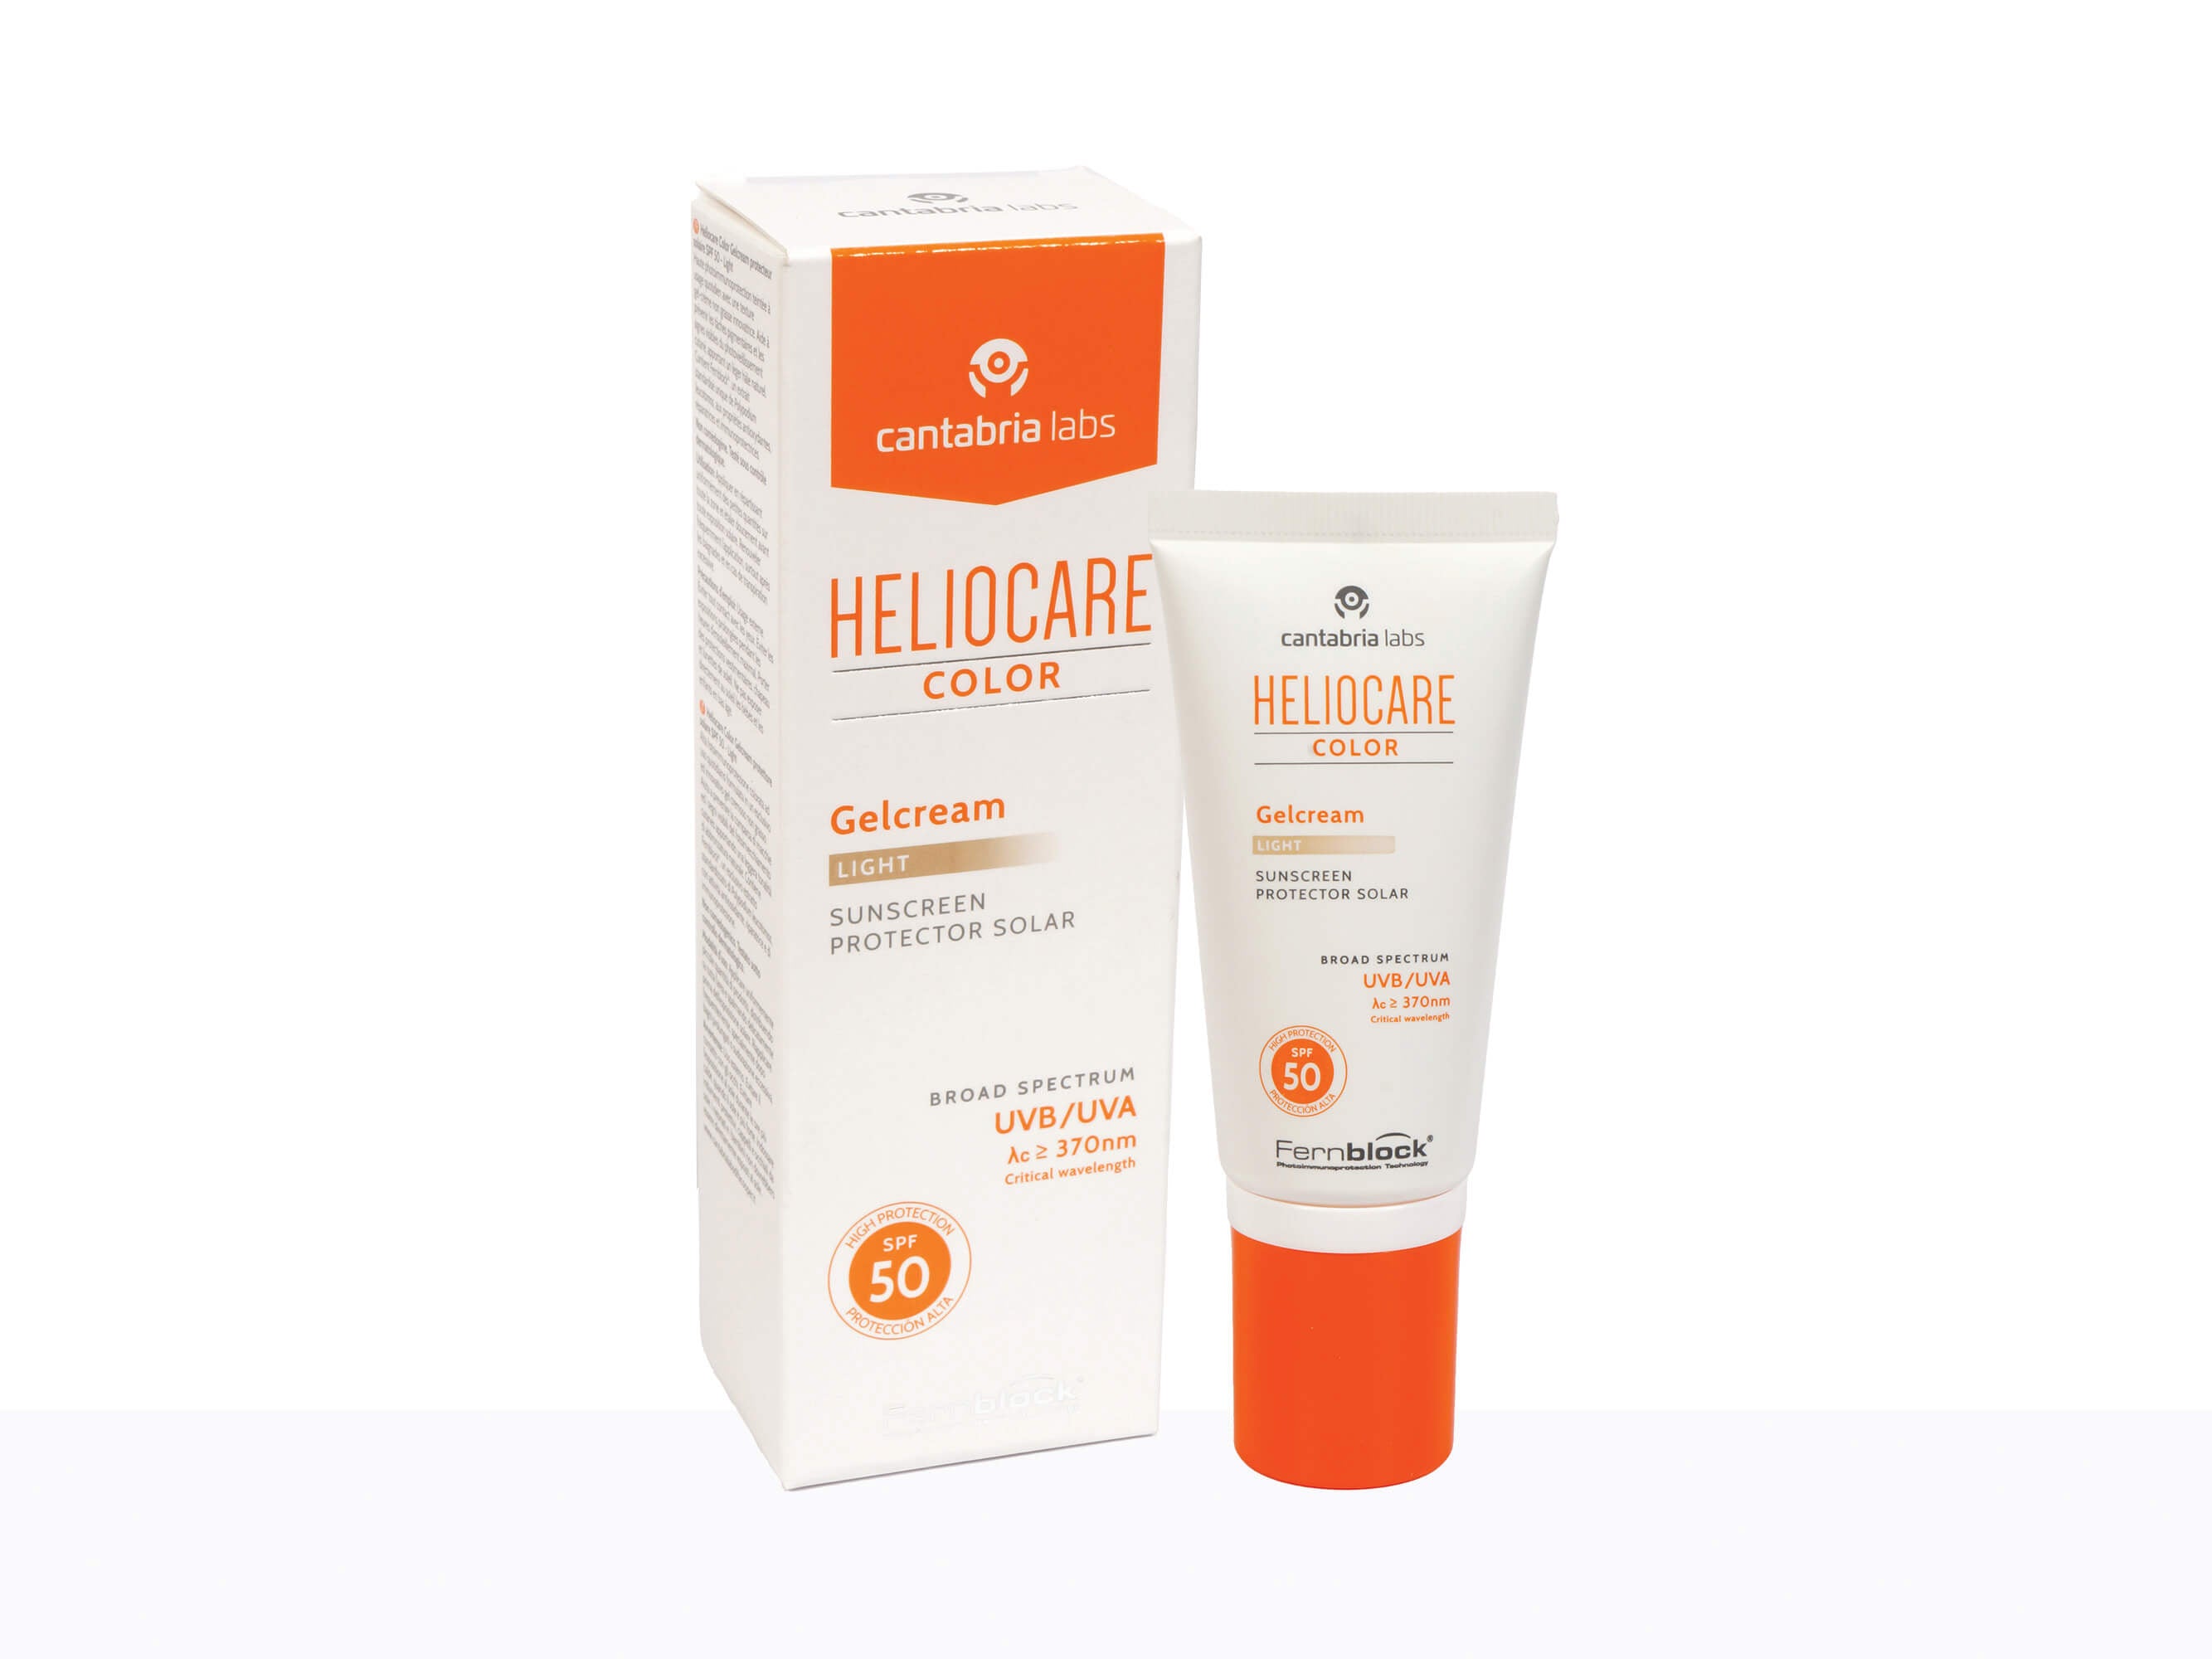 Heliocare Color Sunscreen Protector Solar Gel - Clinikally